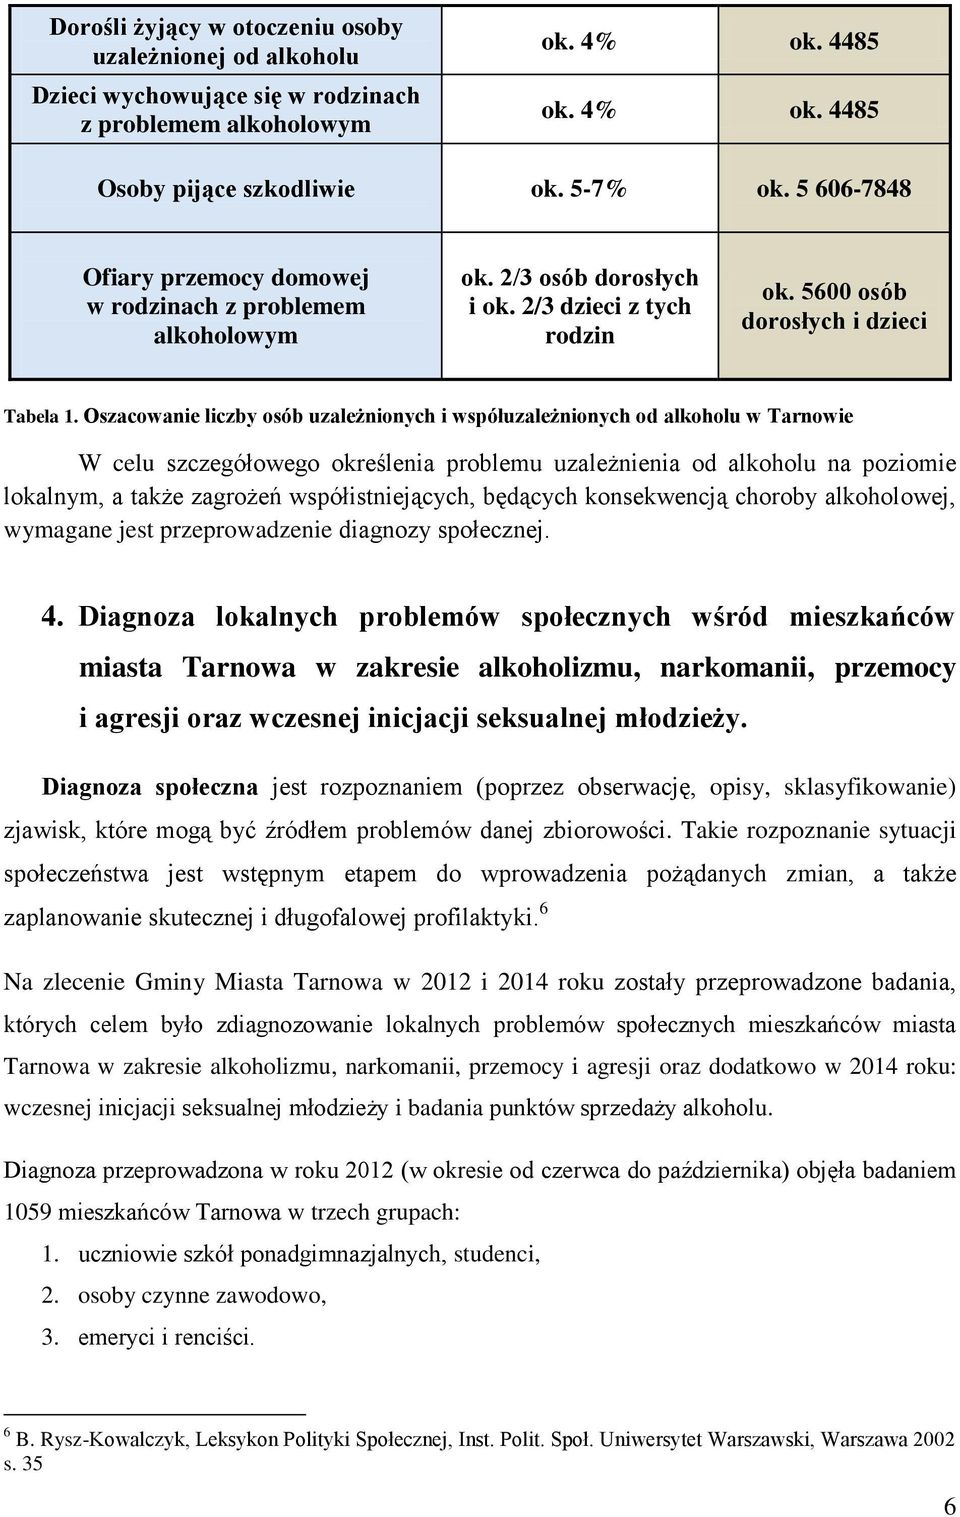 Oszacowanie liczby osób uzależnionych i współuzależnionych od alkoholu w Tarnowie W celu szczegółowego określenia problemu uzależnienia od alkoholu na poziomie lokalnym, a także zagrożeń